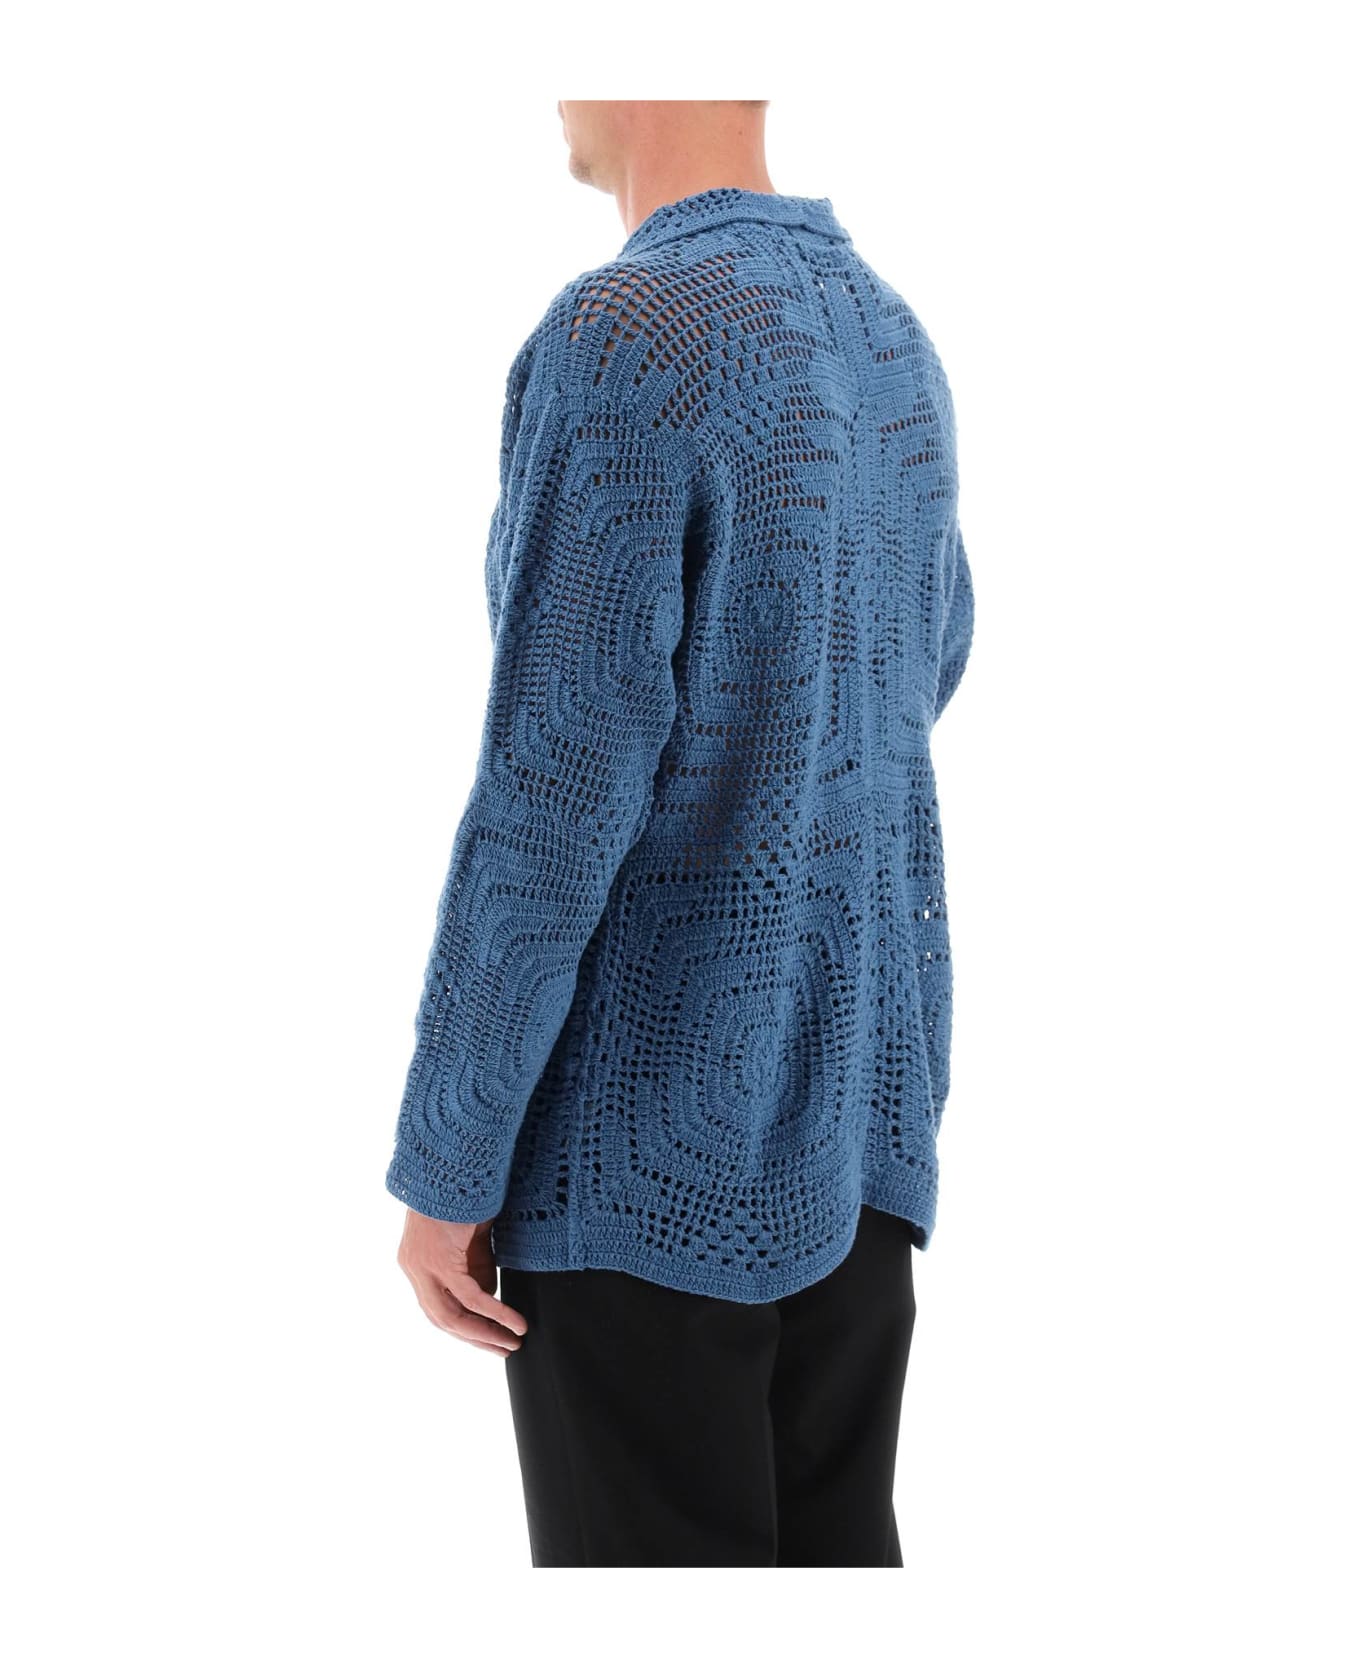 Bode Overdyed Crochet Shirt - PETROL (Blue)